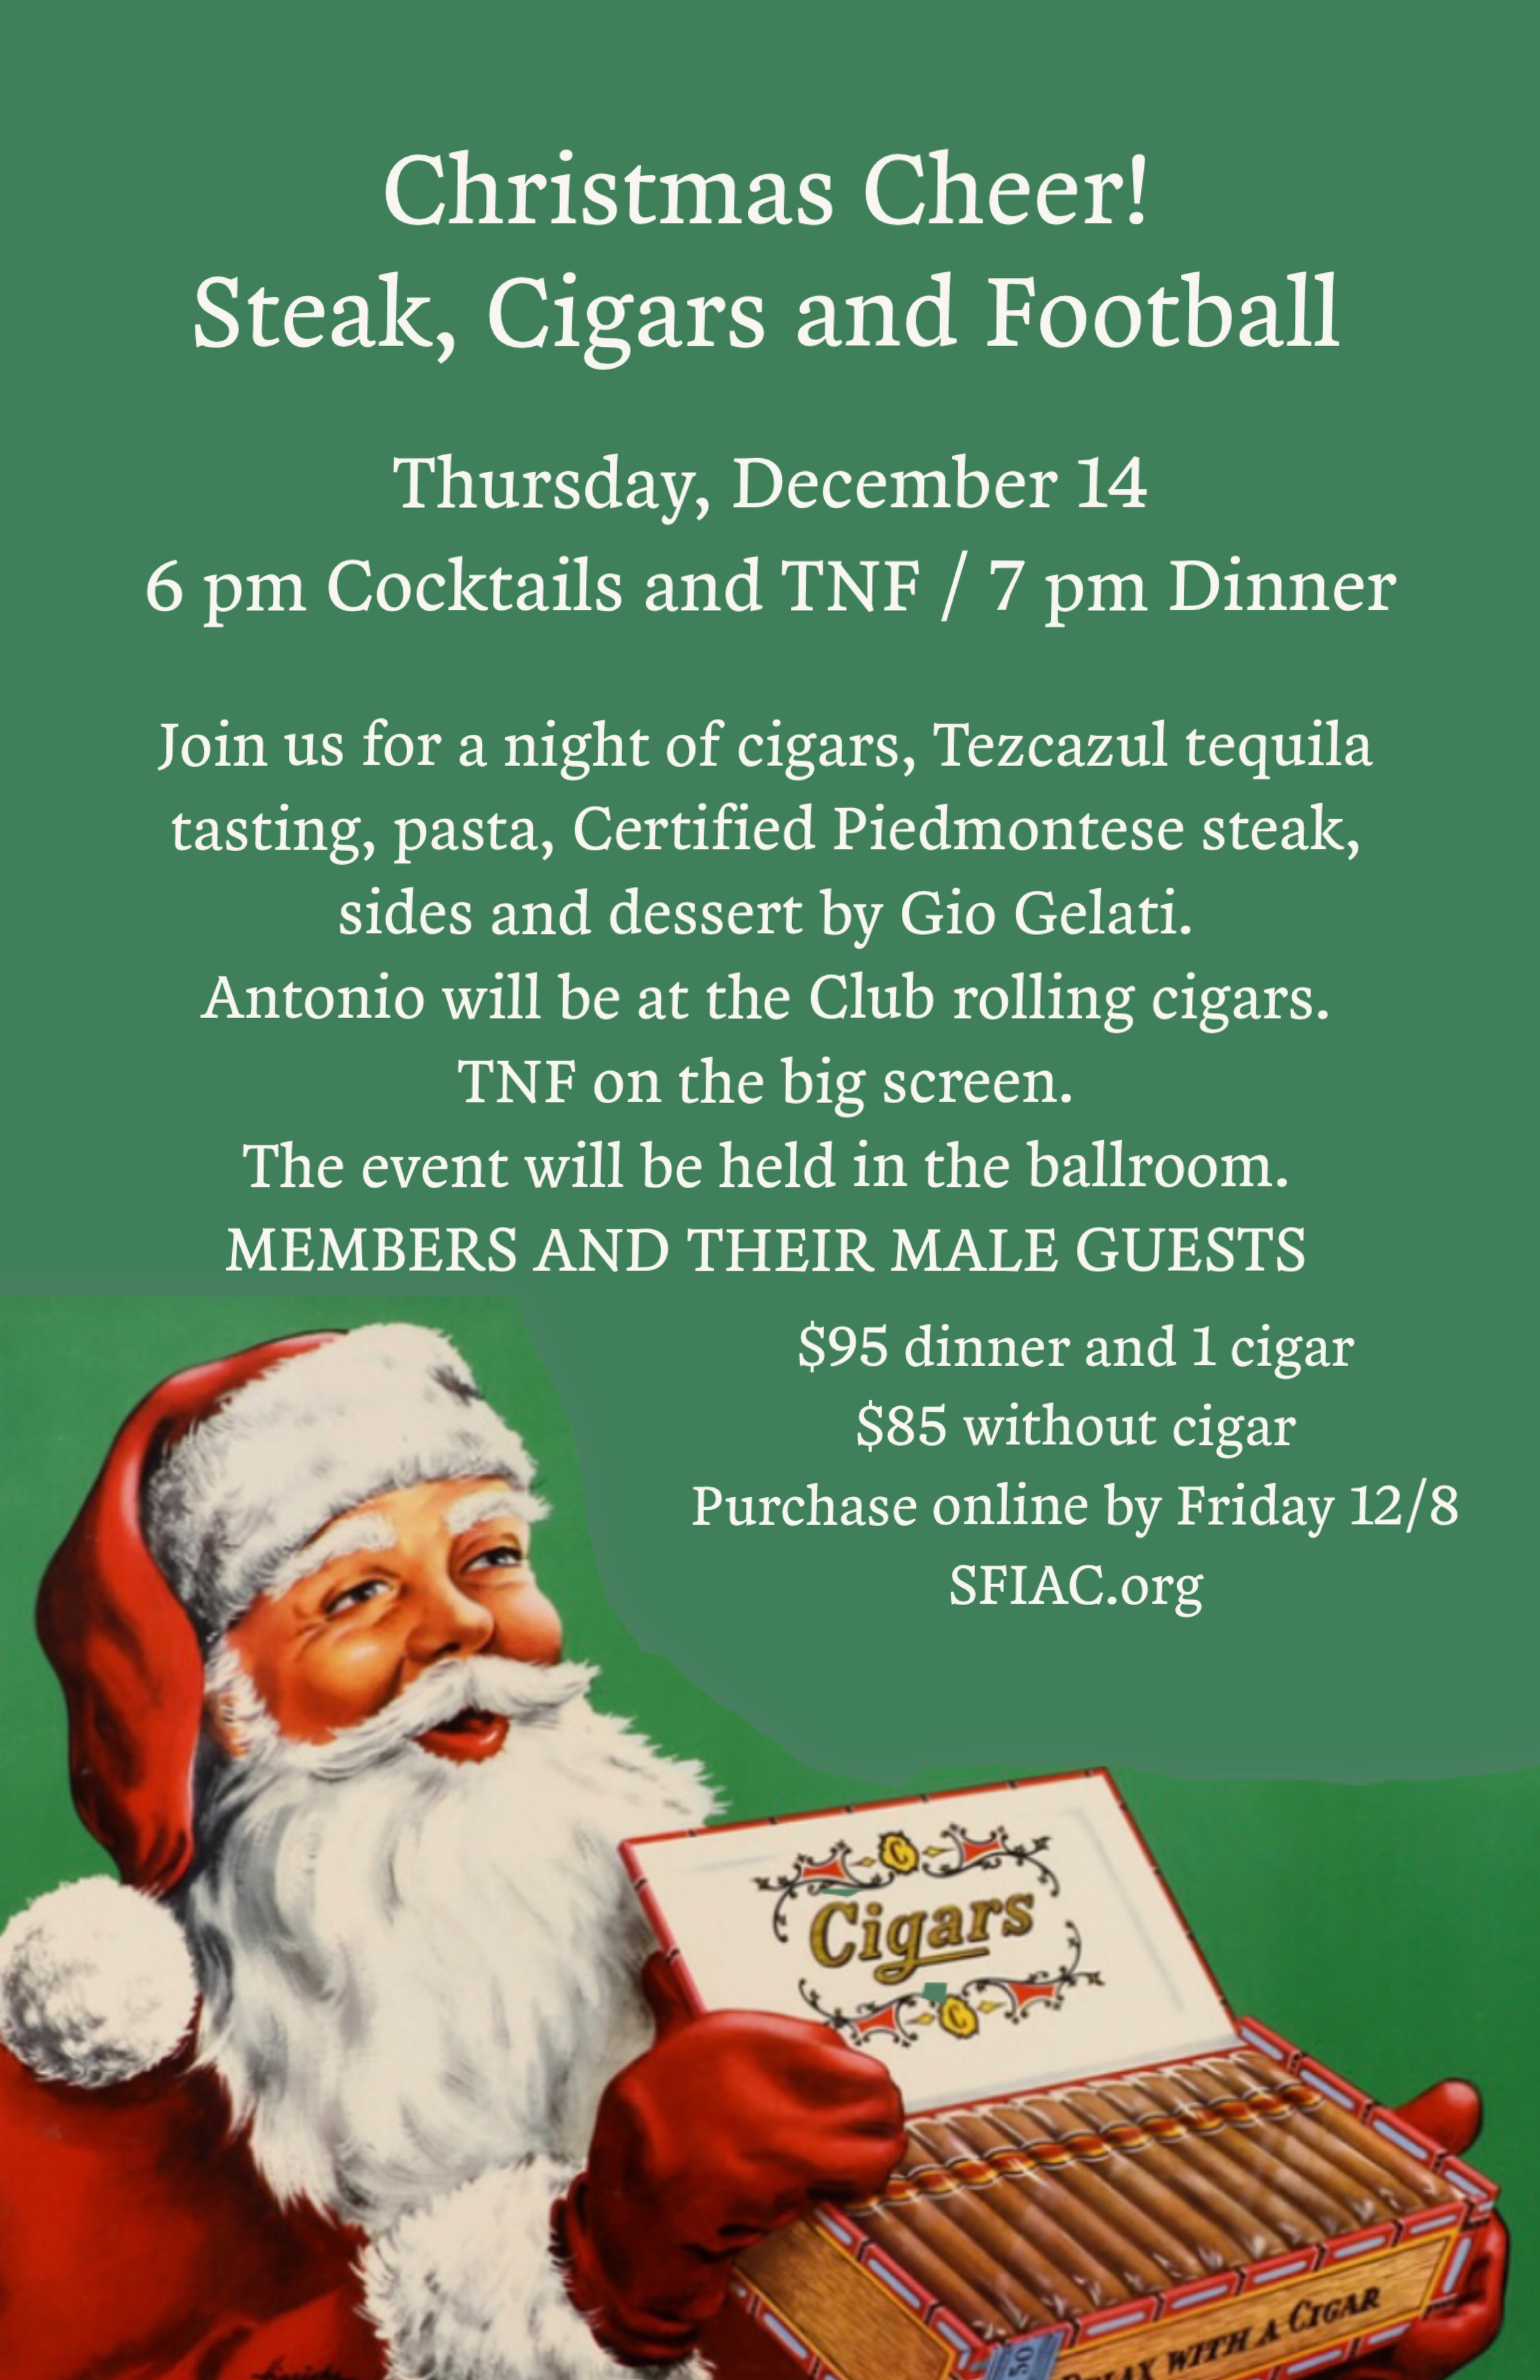 Dec 14 Christmas Cigar and Steak — San Francisco Italian Athletic Club SFIAC